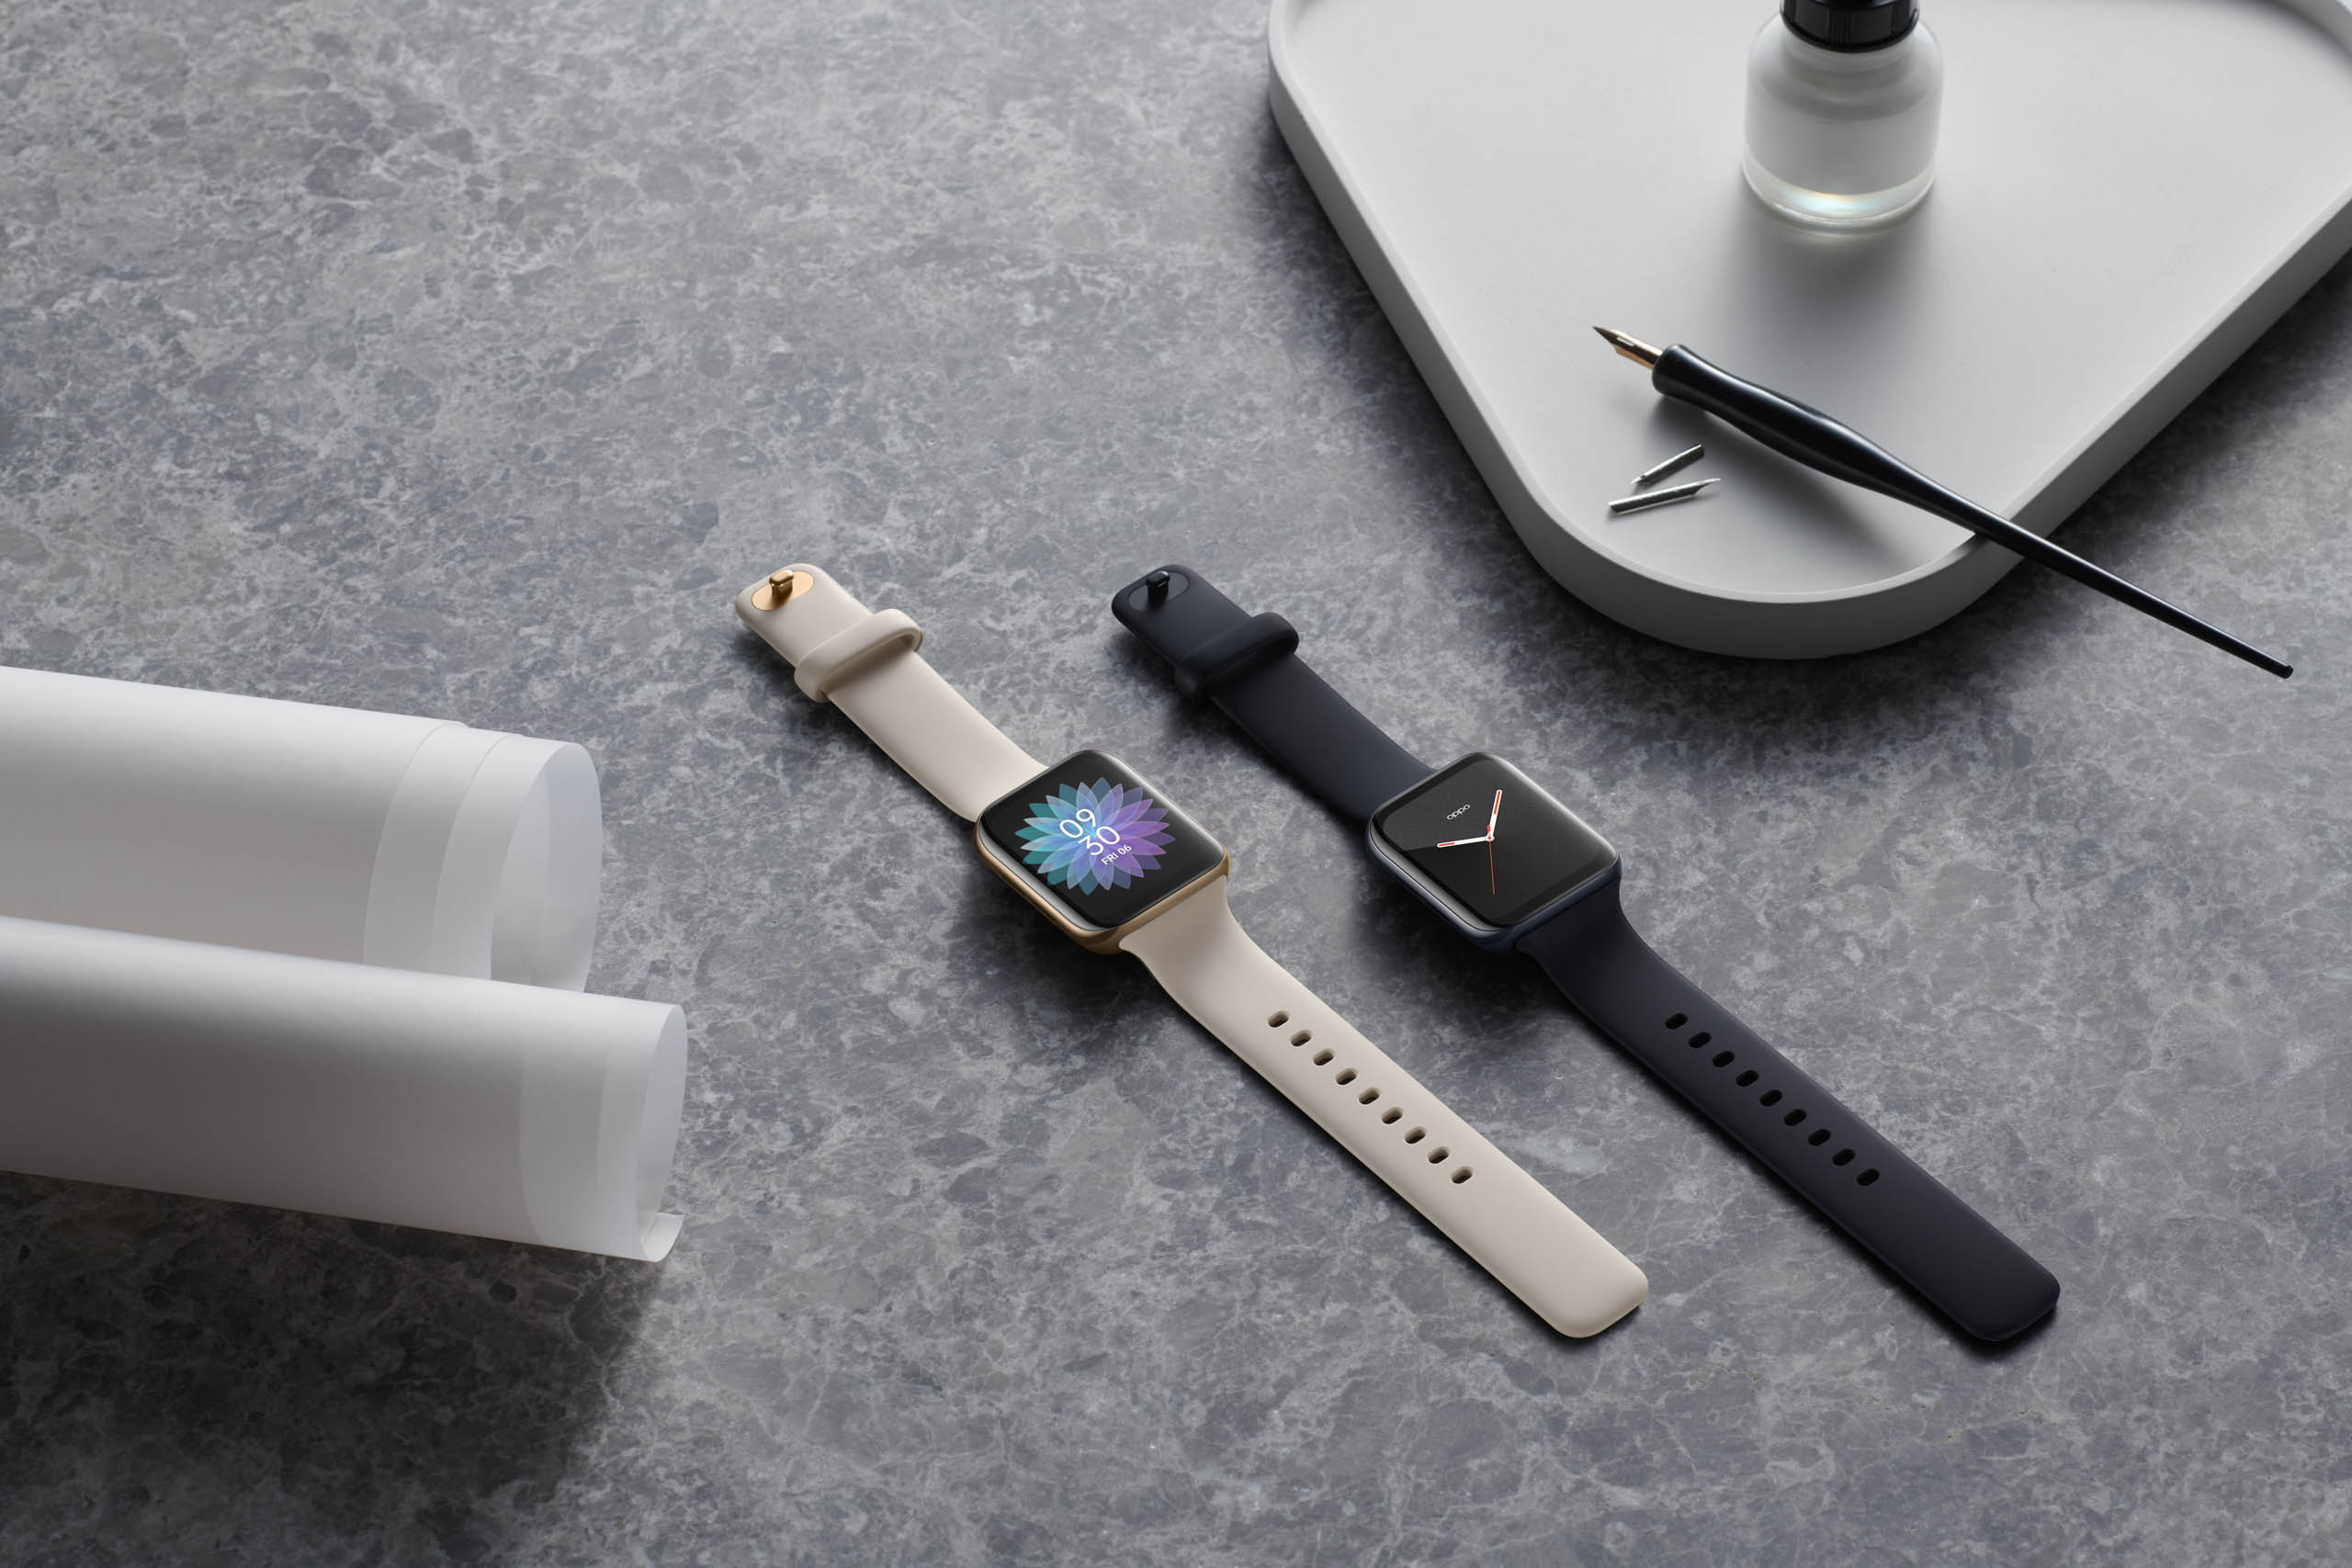 It’s not an Apple Watch, it’s an Oppo Watch